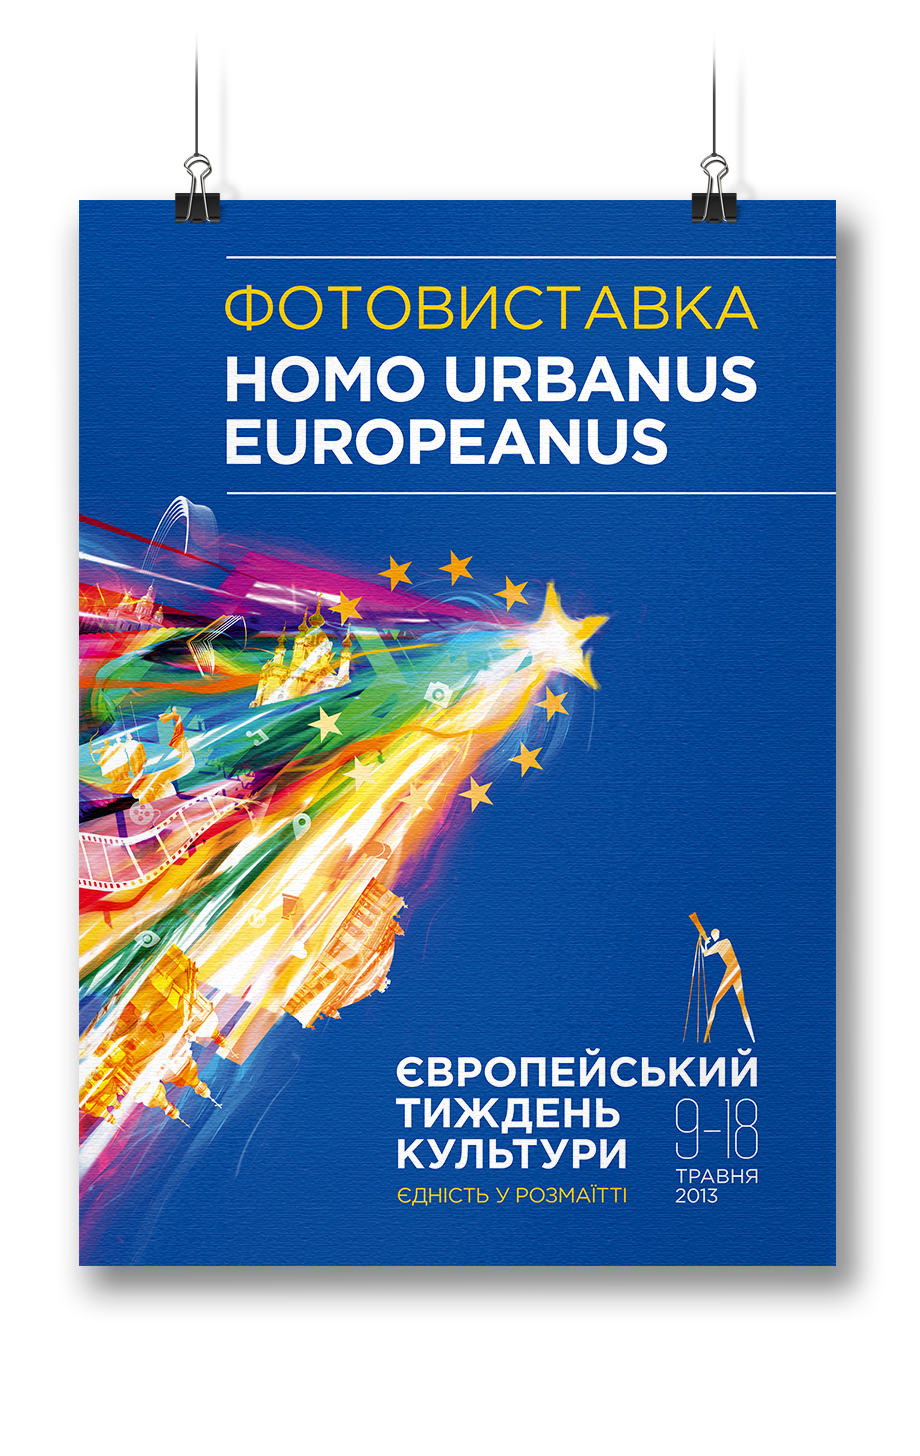 Постер для Европейской Недели Культуры